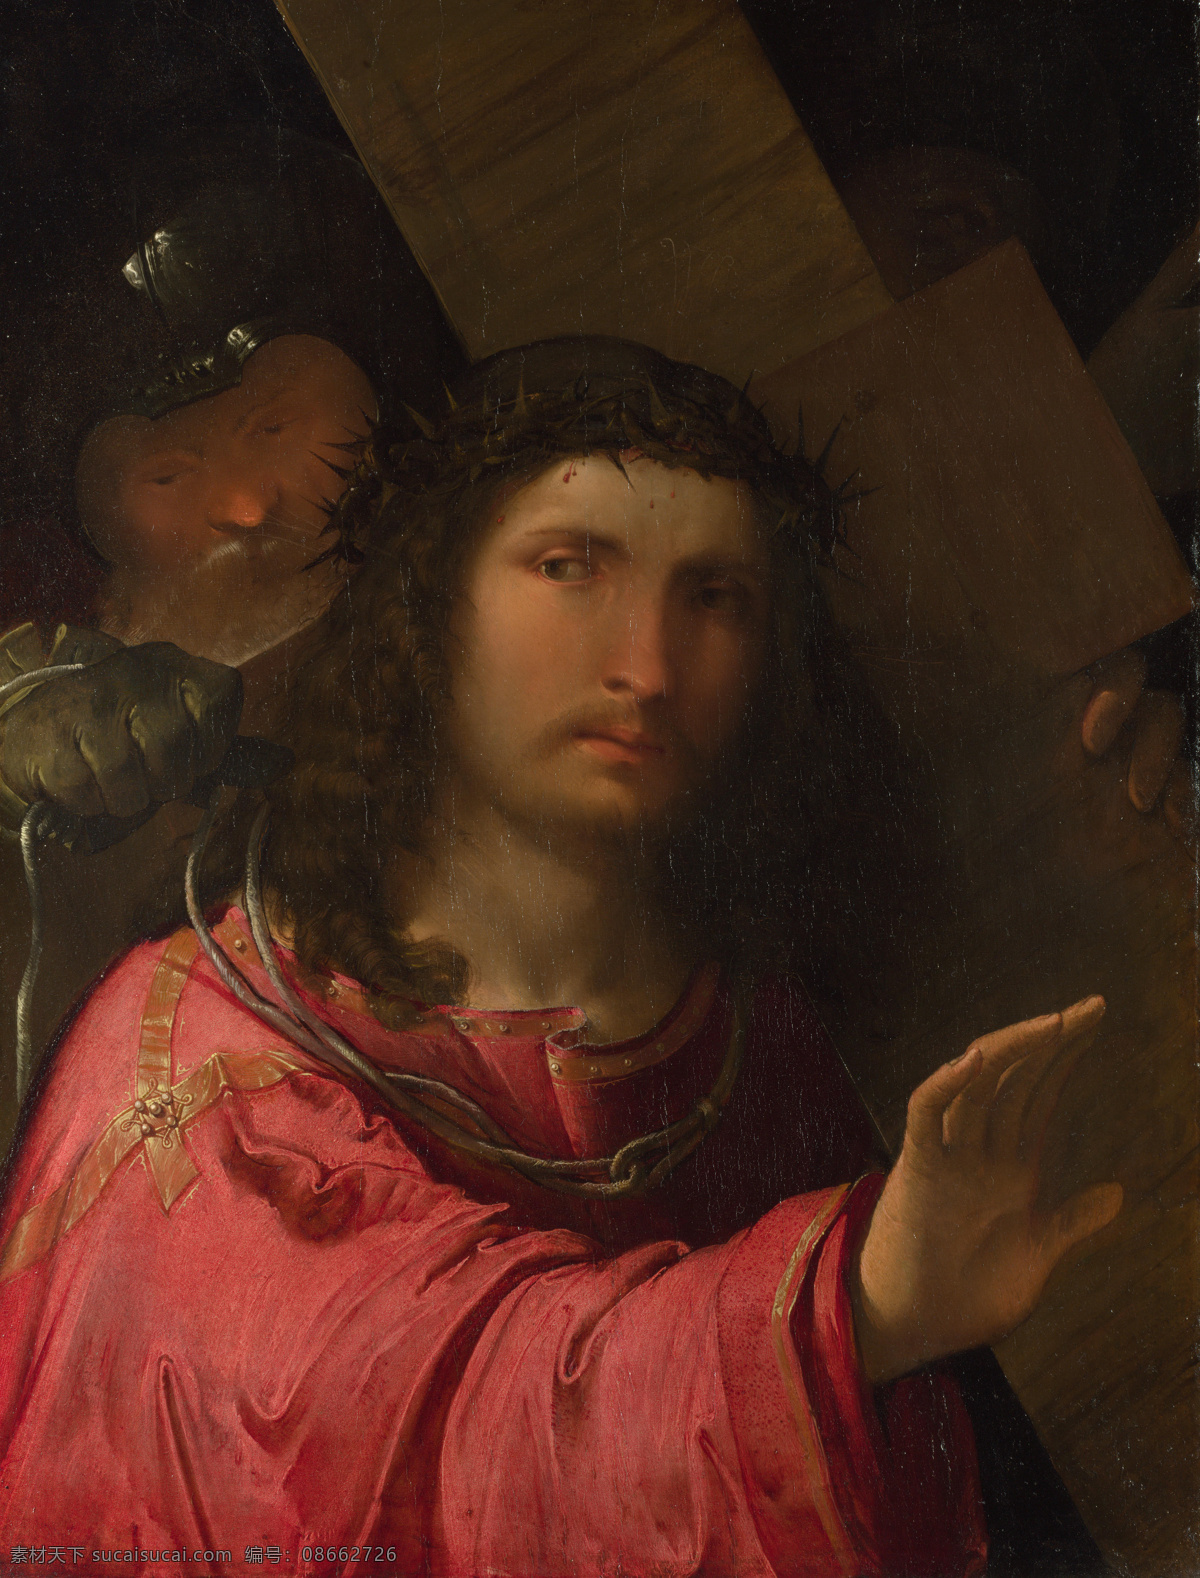 上帝耶稣肖像 世界名画 油画 西方油画 西方文化 绘画艺术 基督教 宗教绘画 上帝 耶稣 肖像 书画文字 文化艺术 黑色